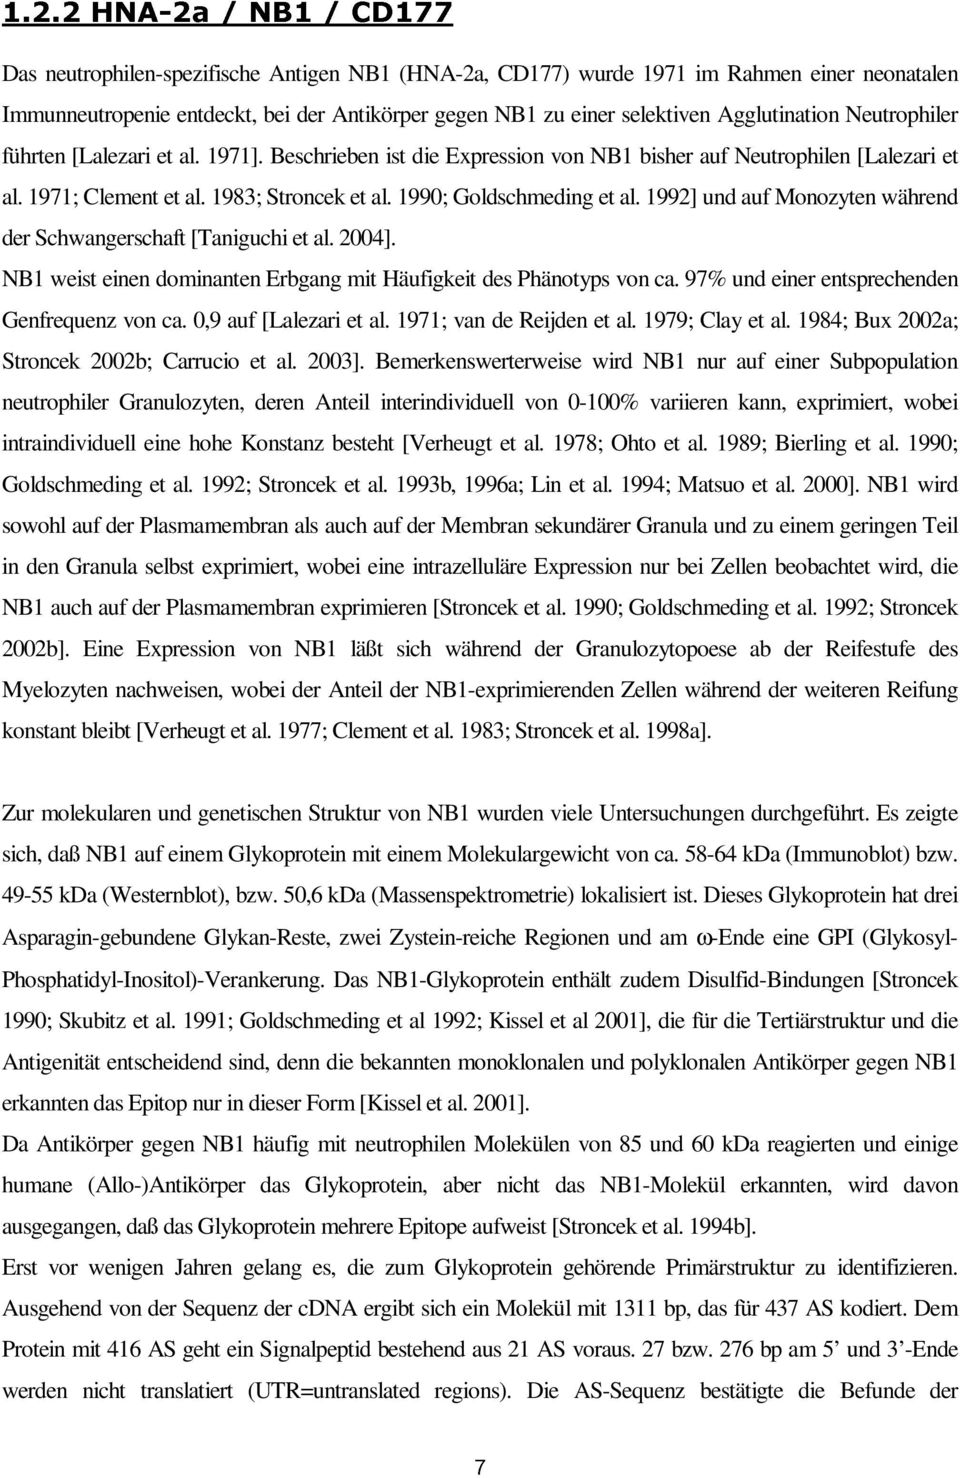 1990; Goldschmeding et al. 1992] und auf Monozyten während der Schwangerschaft [Taniguchi et al. 2004]. NB1 weist einen dominanten Erbgang mit Häufigkeit des Phänotyps von ca.